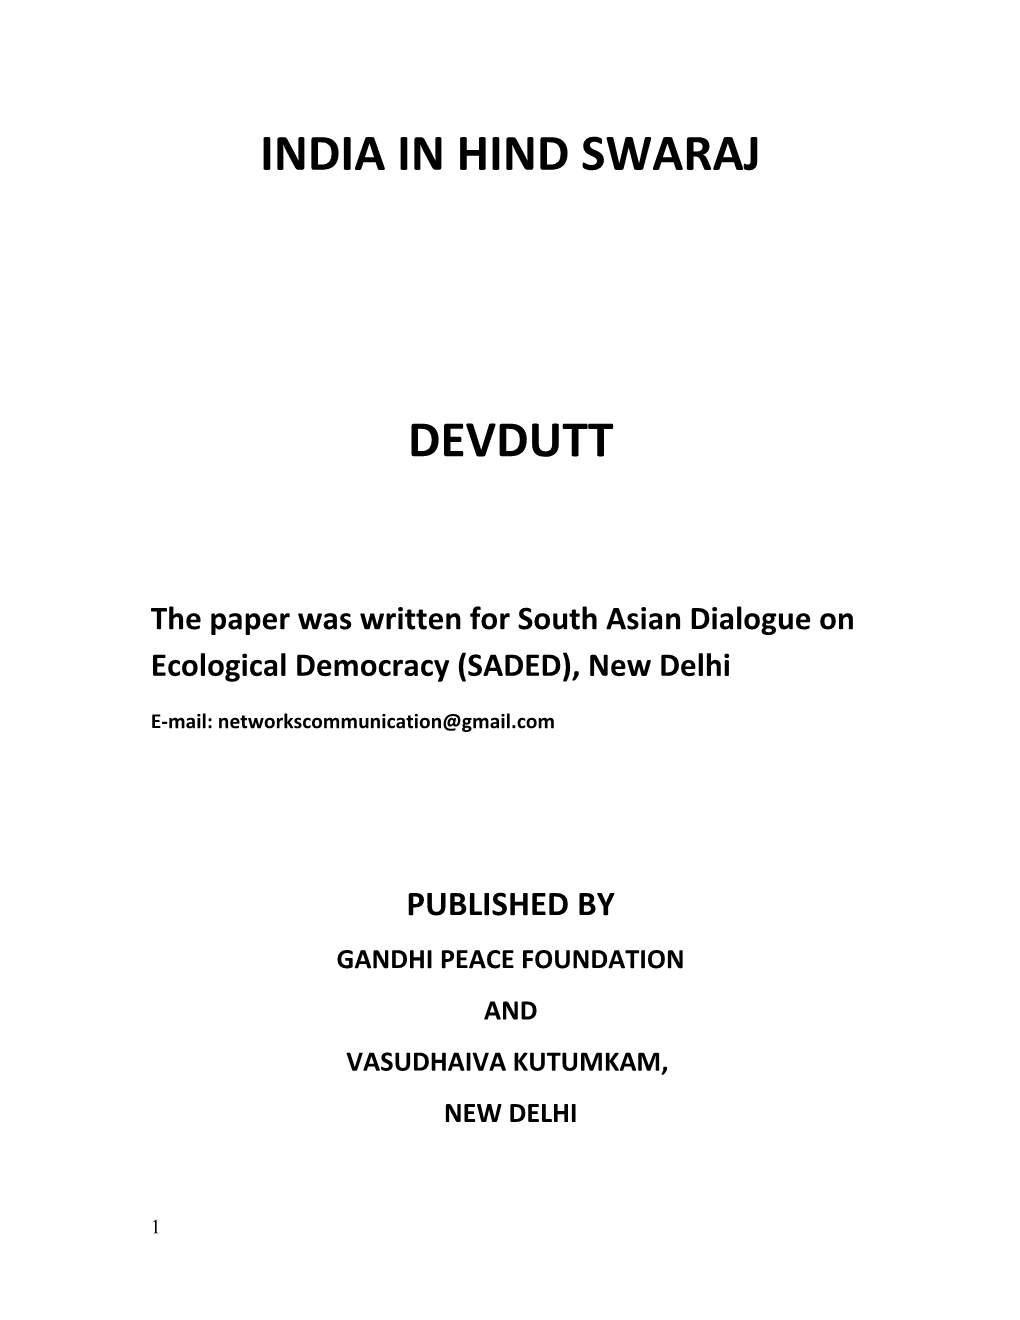 India in Hind Swaraj